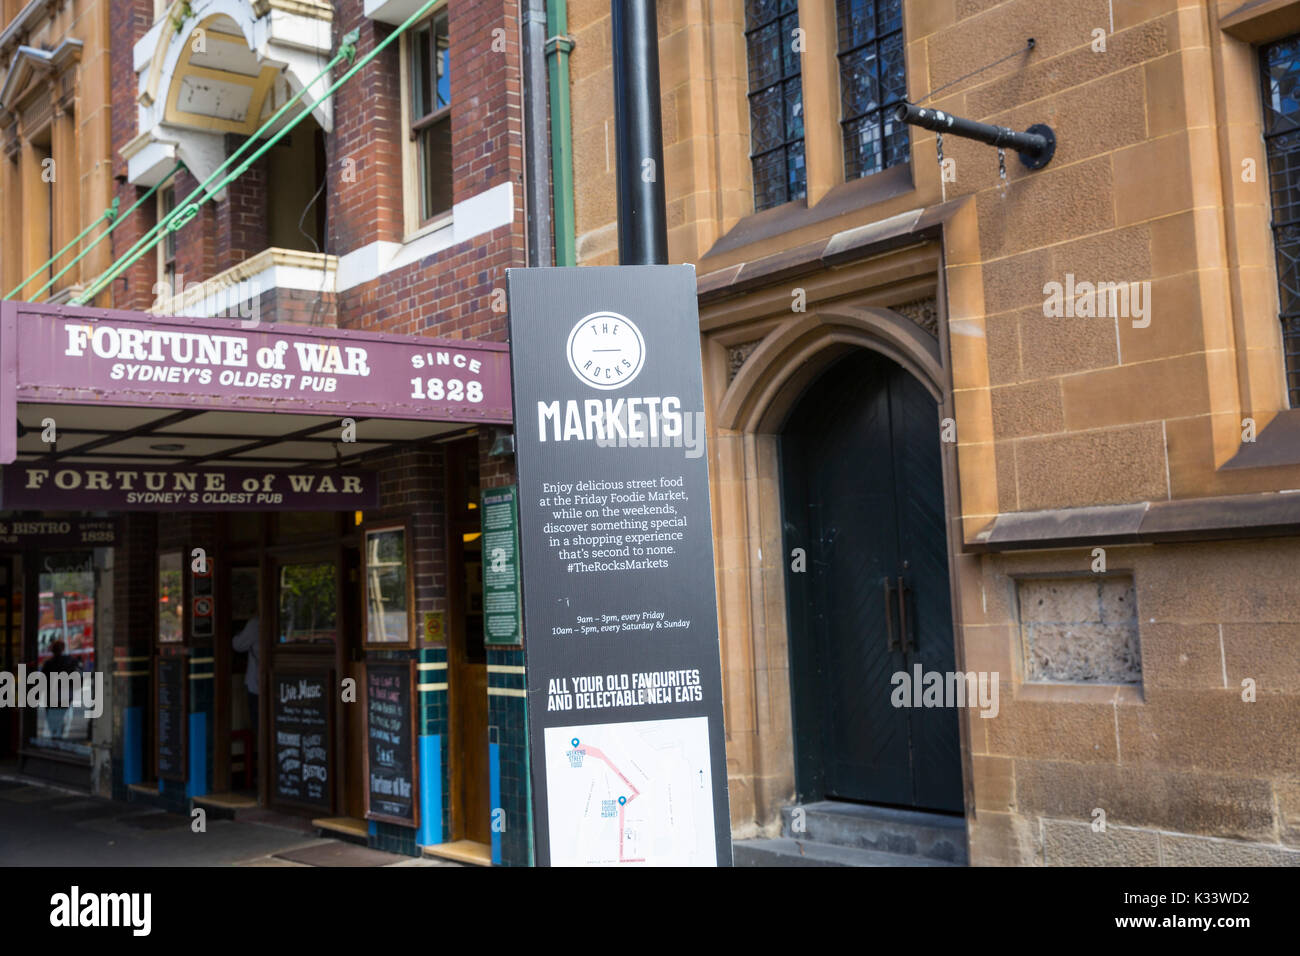 Signer pour les roches Sydney foodie marchés et Fortune de guerre plus vieux pub de Sydney Sydney, Australie, Banque D'Images